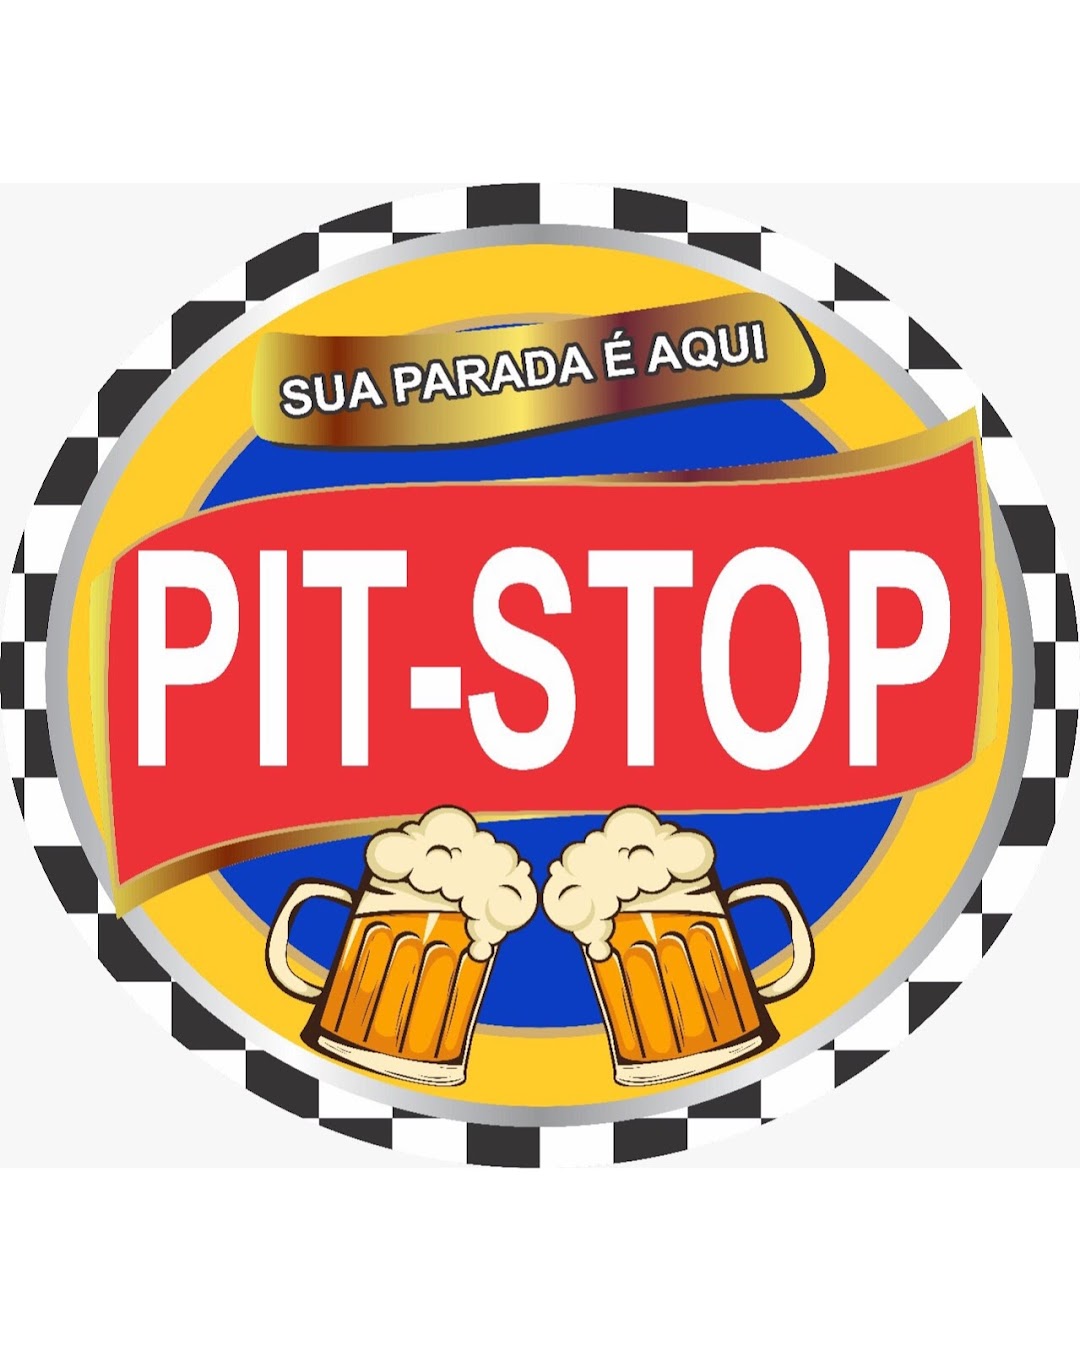 PIT-STOP Distribuidora de Bebidas e Conveniências